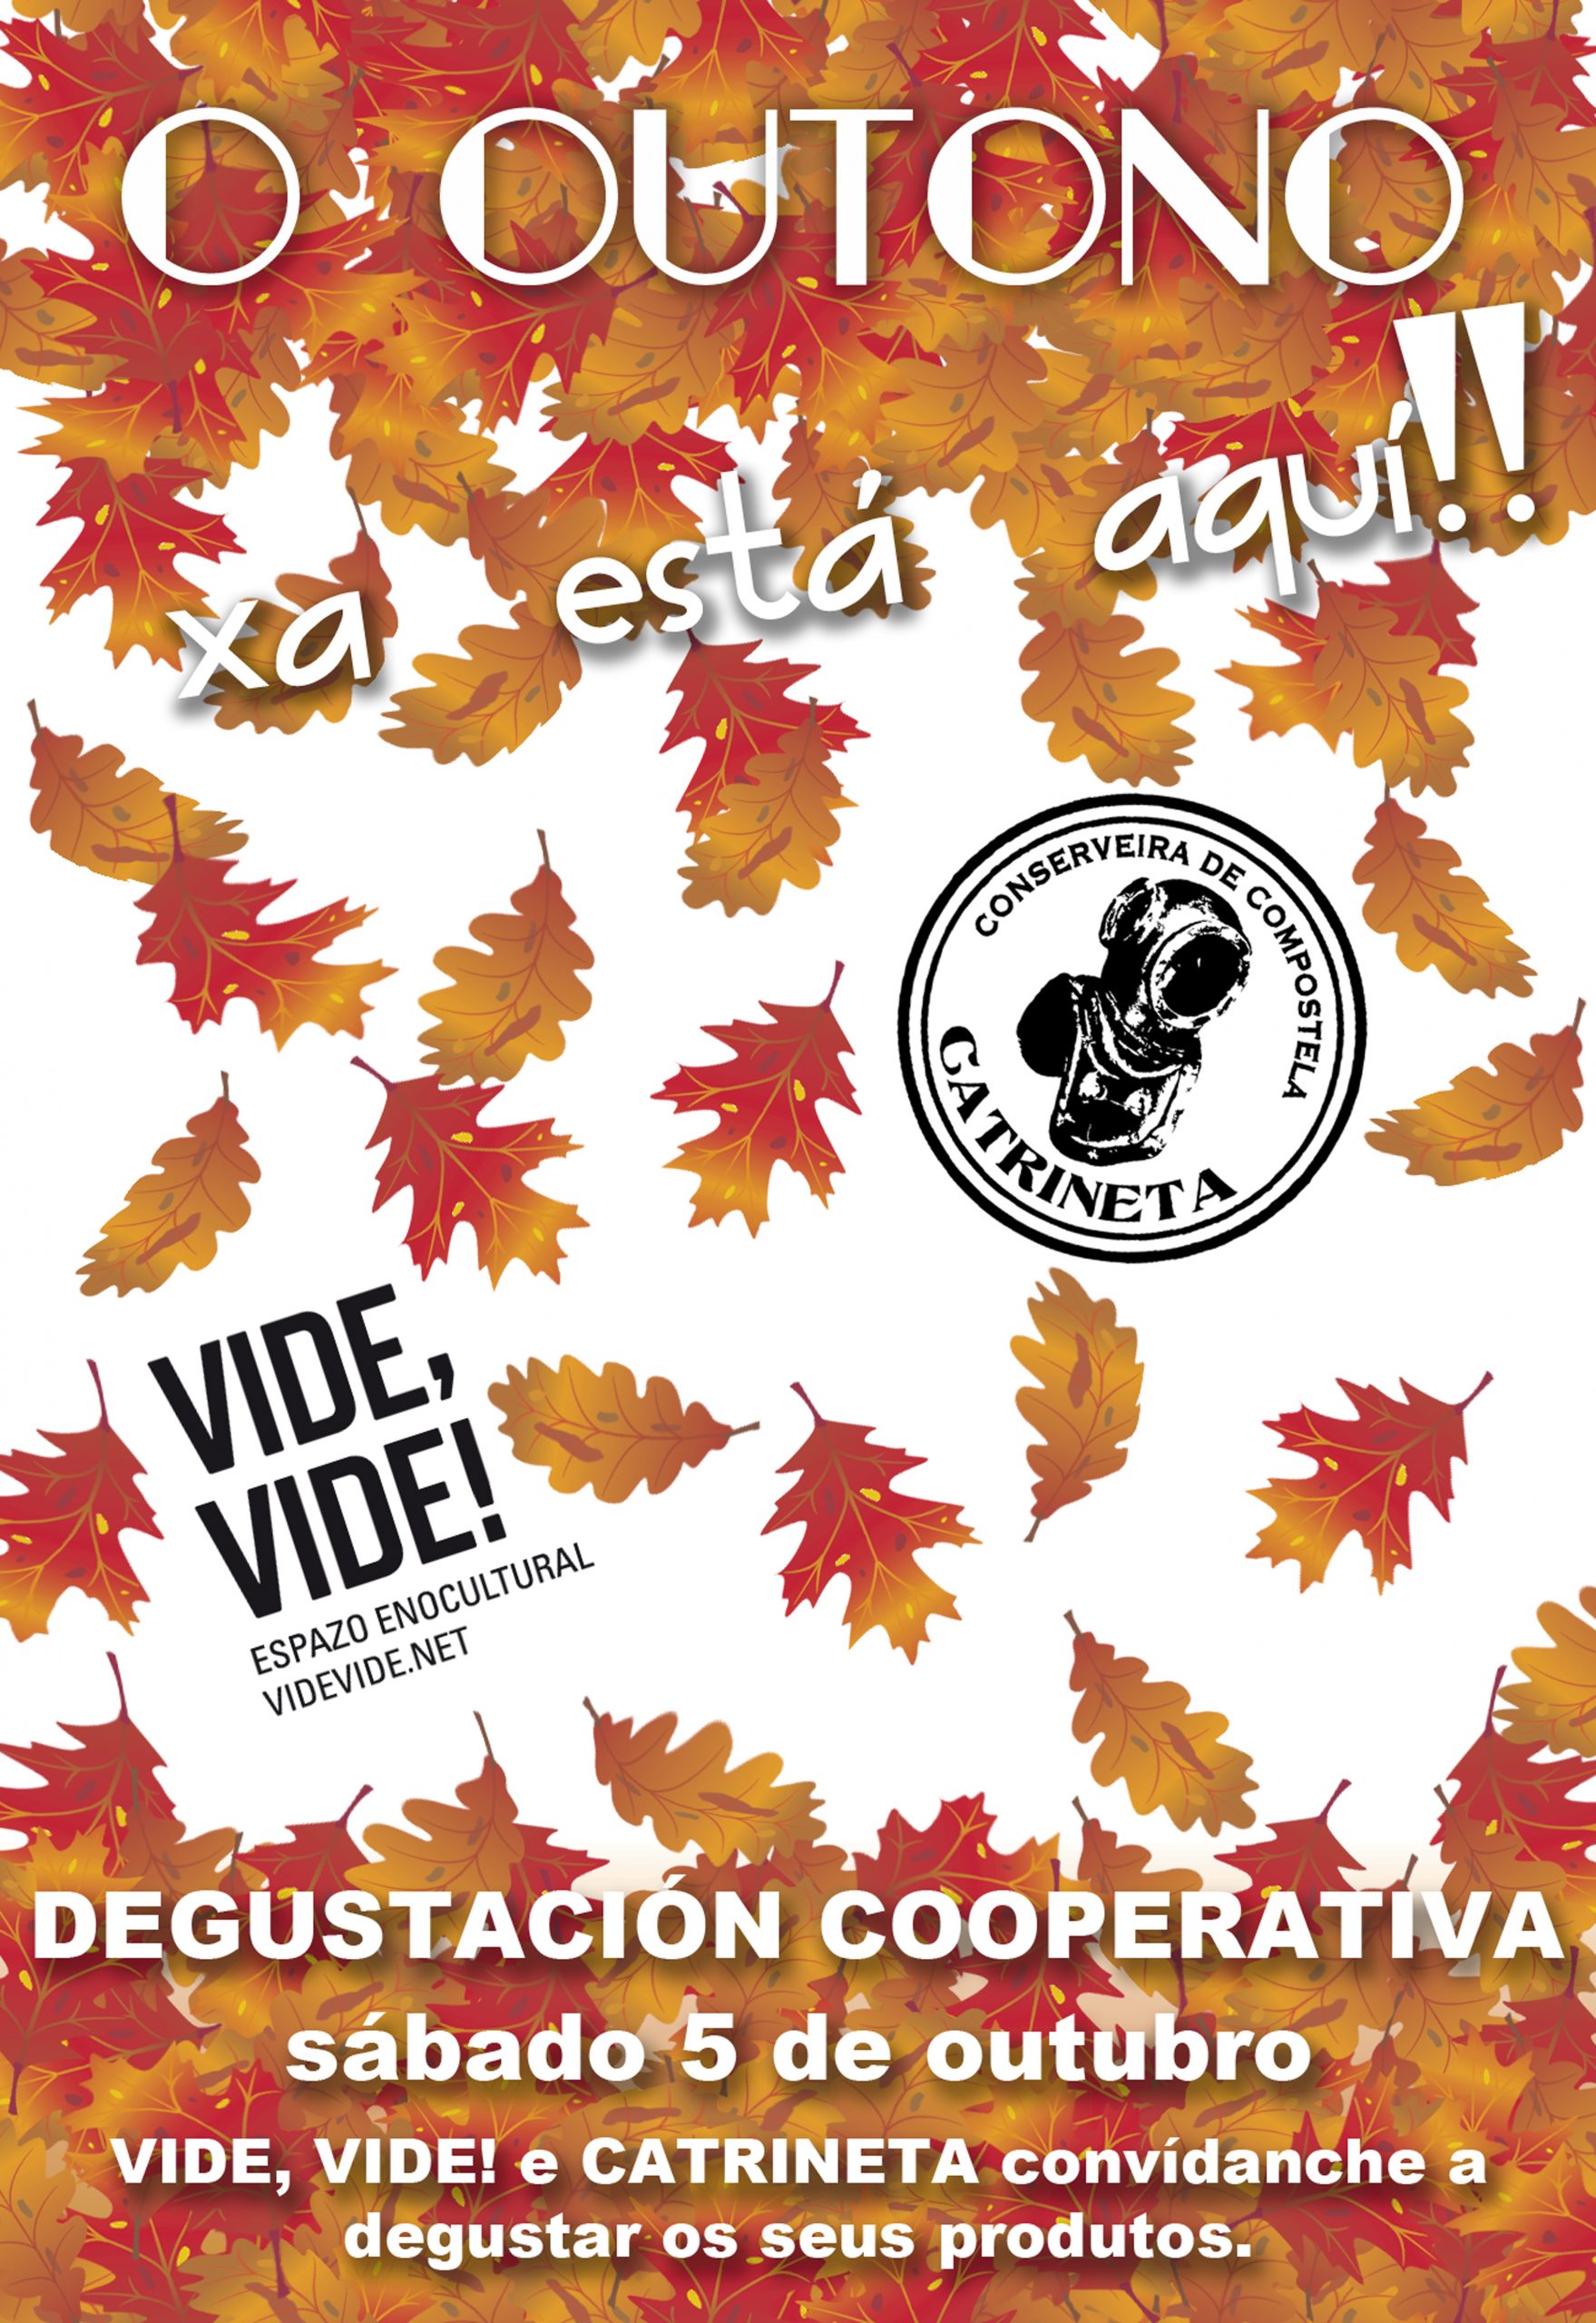 Sábado 5 de outubro Degustación Cooperativa